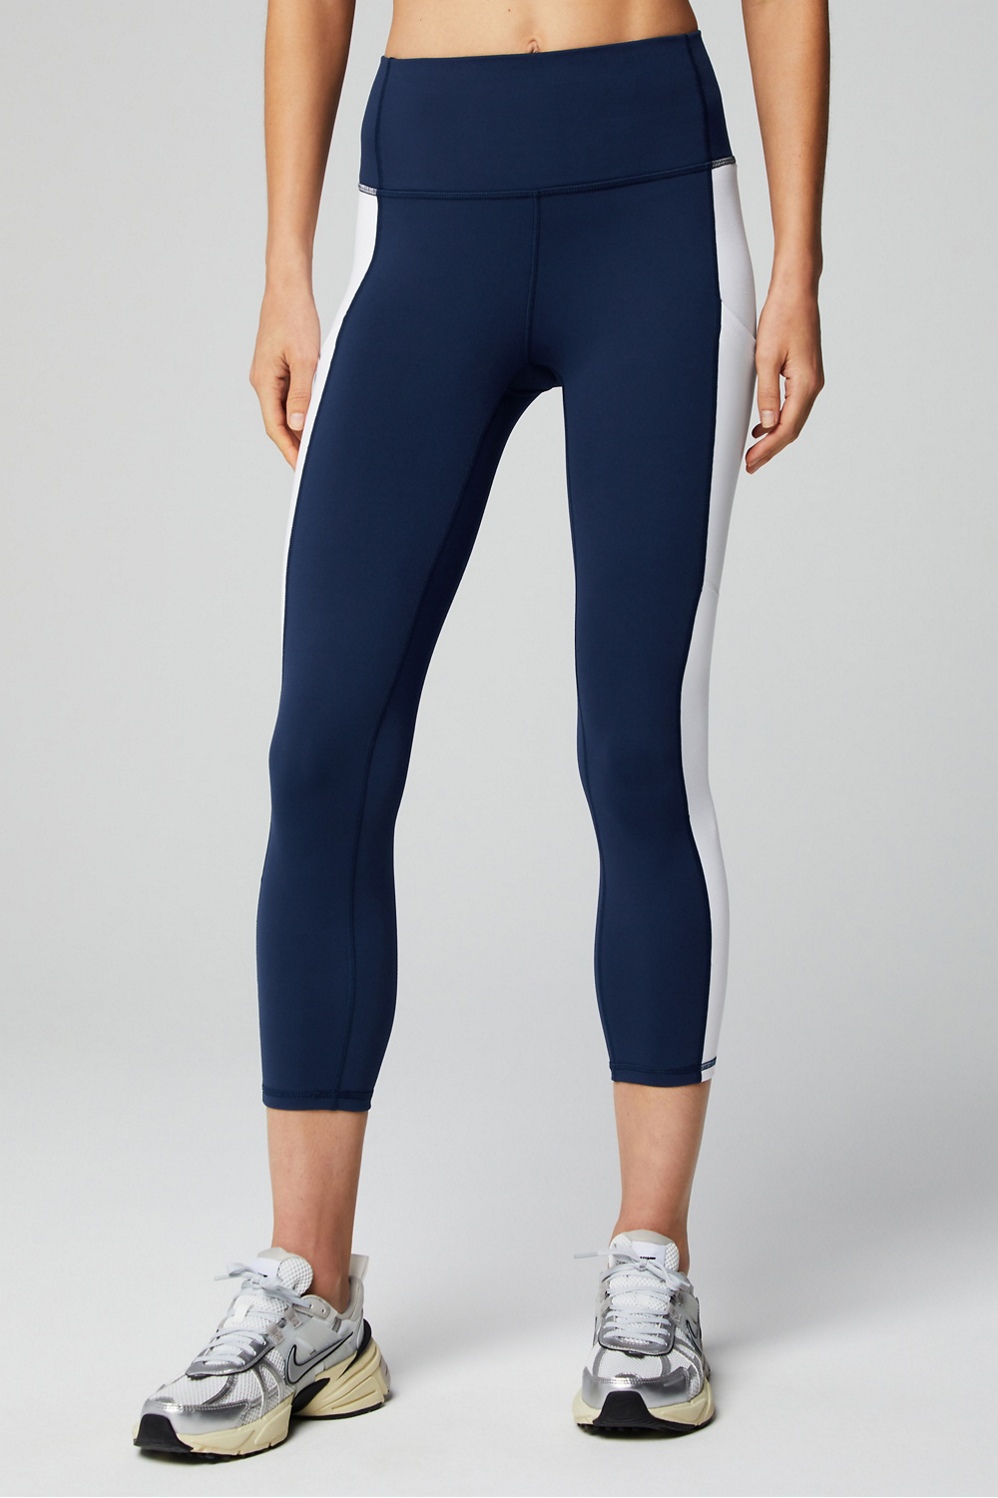 Nike Dri Fit Capri Leggings Women's Size Medium Blue Navy Stripes